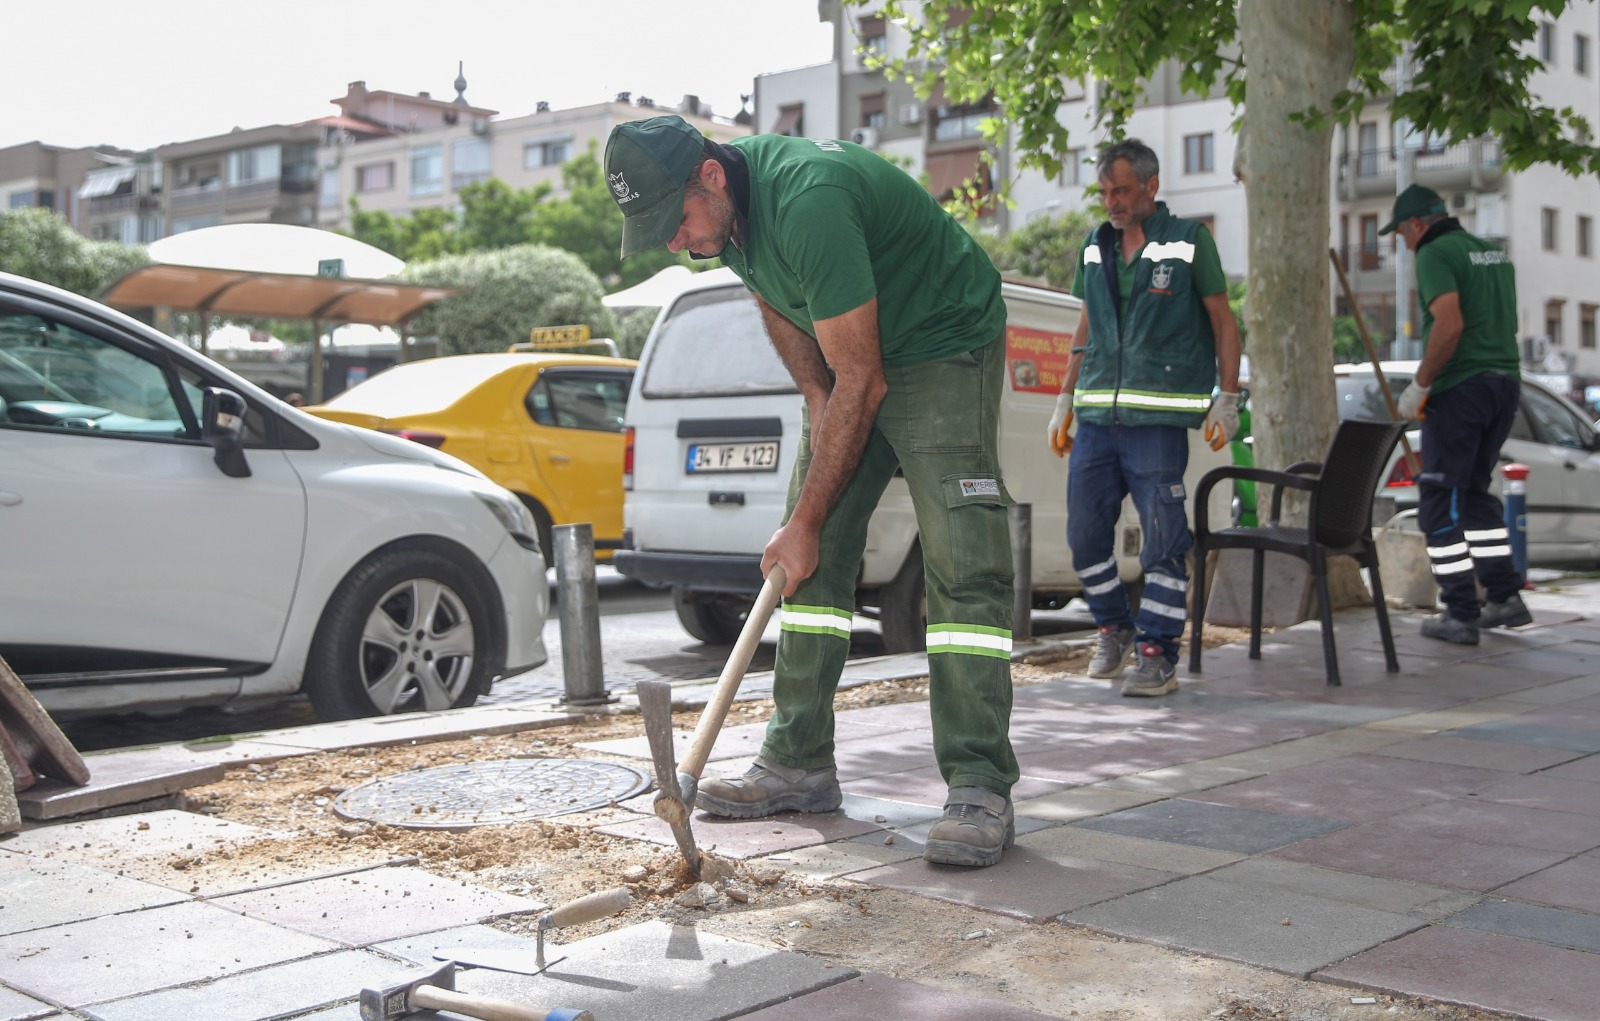 Konak Belediyesi Konak Belediyesi Fen İşleri Müdürlüğü ekipleri kaldırımları mercek altına aldı. Kırılan, oynayan kaldırım taşlarının bakım, onarım ve yenilemesini yapan ekipler işe Güzelyalı-Göztepe arasındaki kaldırım taşlarıyla başladı.